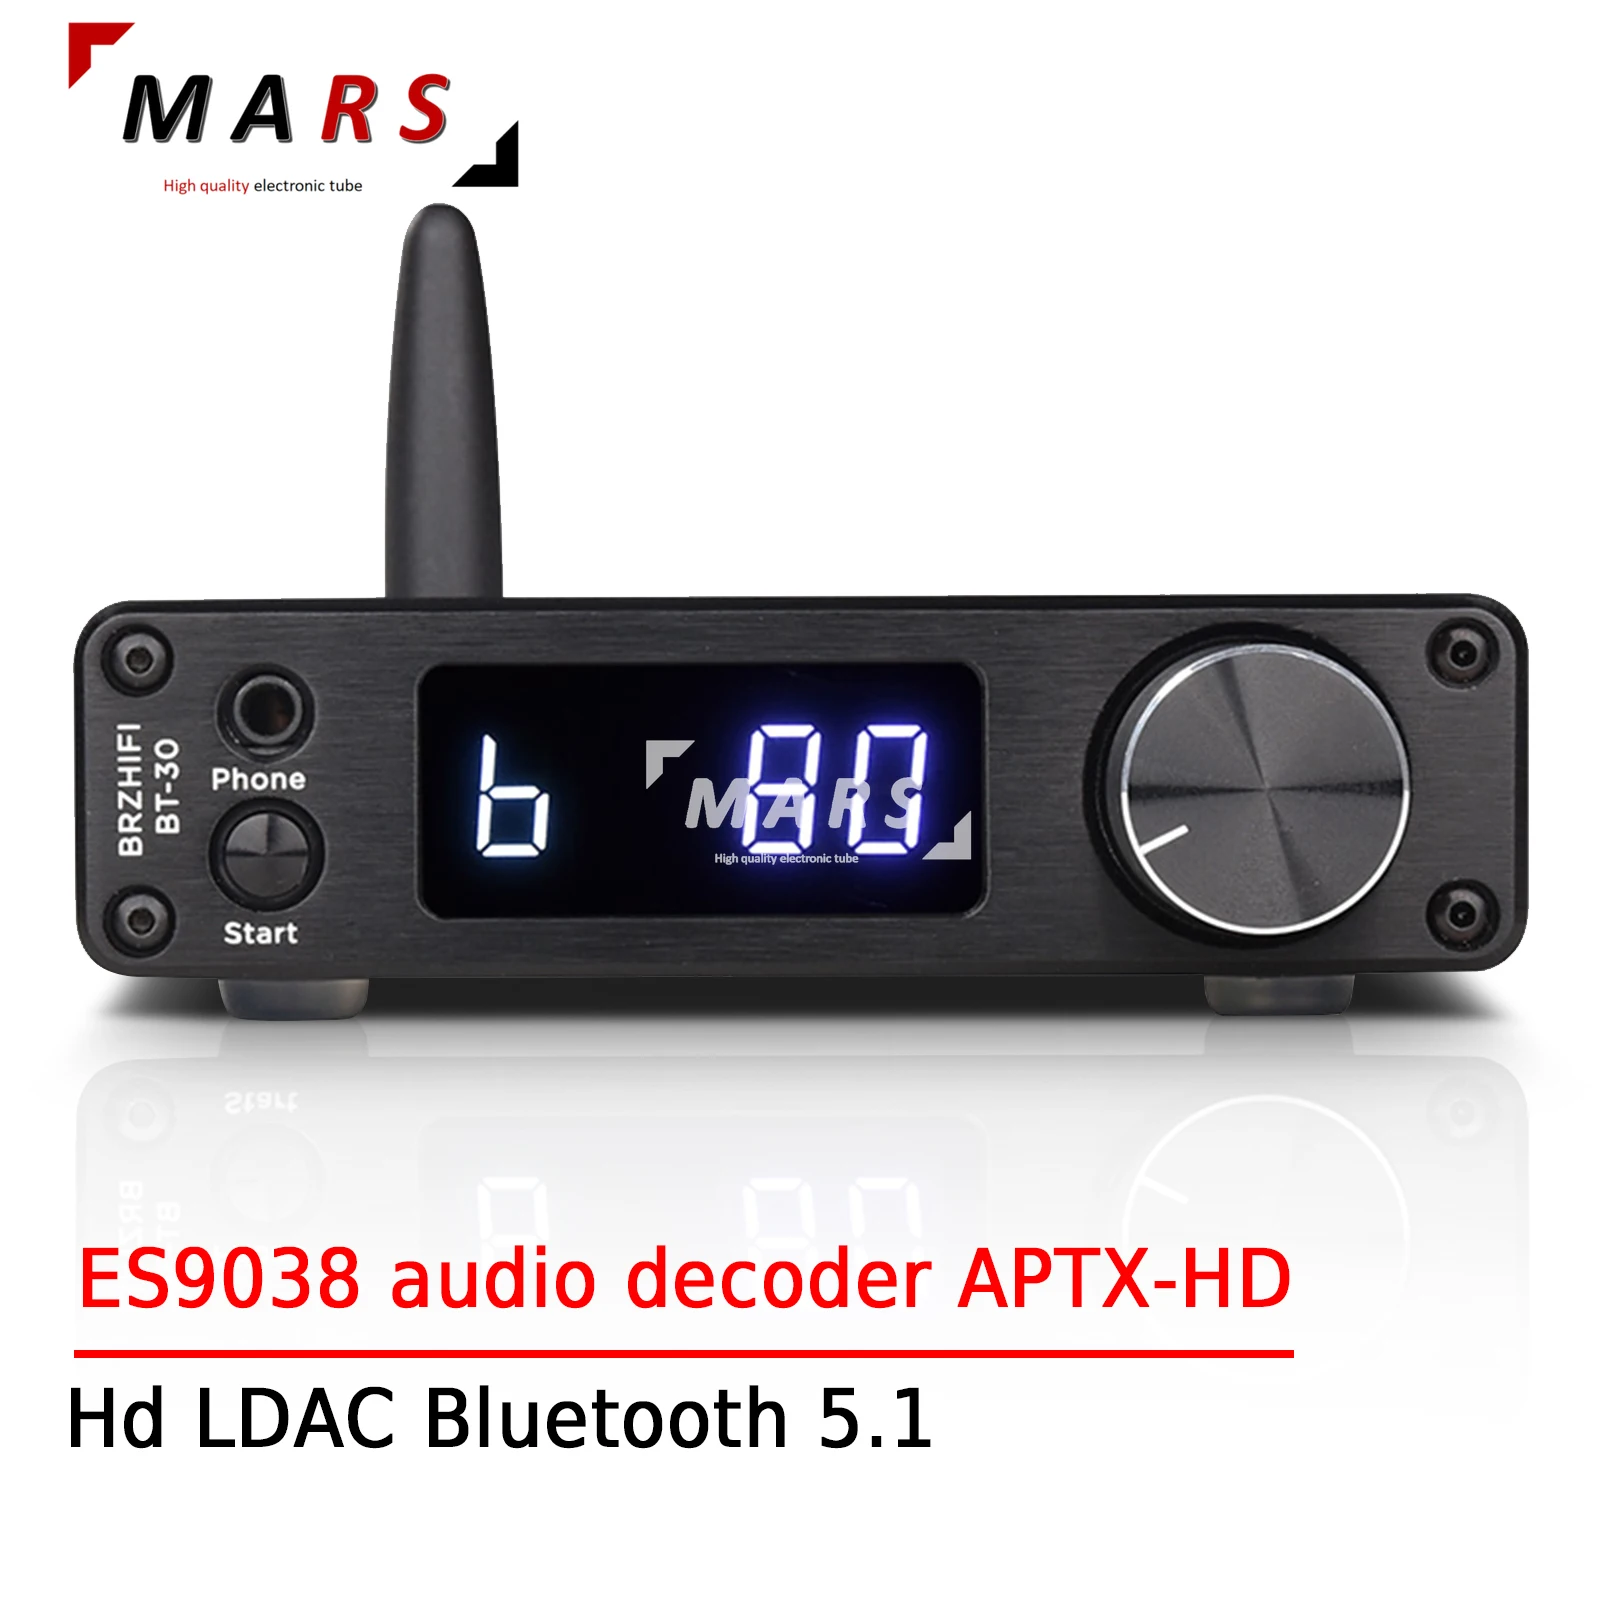 

Приемник BREEZE HIFI BT30 HD LDAC Bluetooth 5,1, внешний декодер ES9038 для домашнего кинотеатра